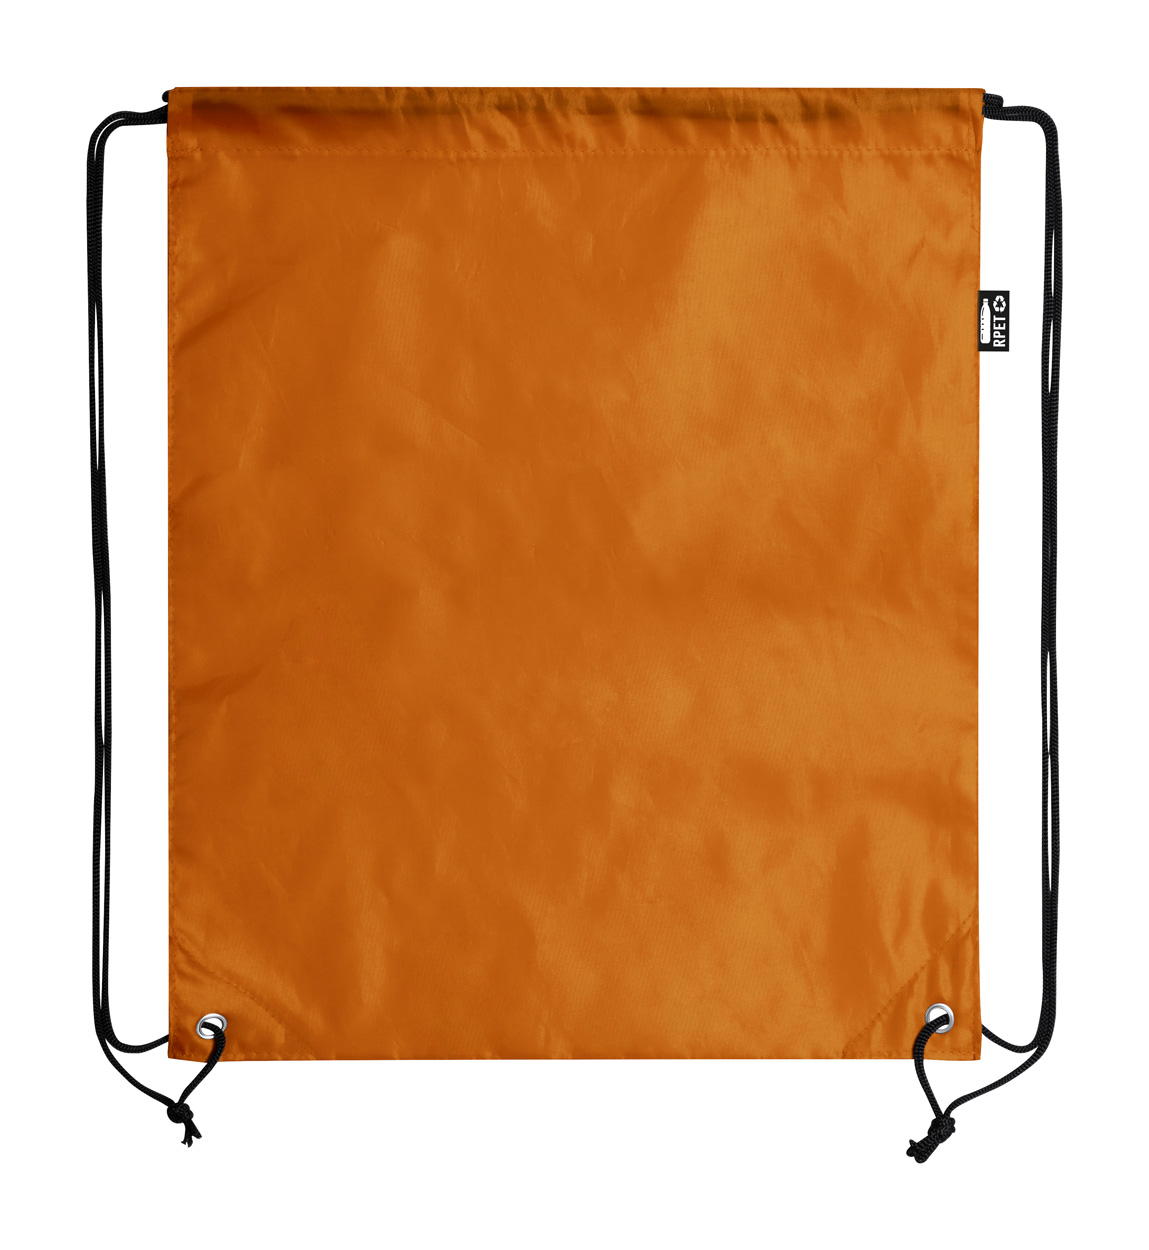 Lambur RPET drawstring bag - orange